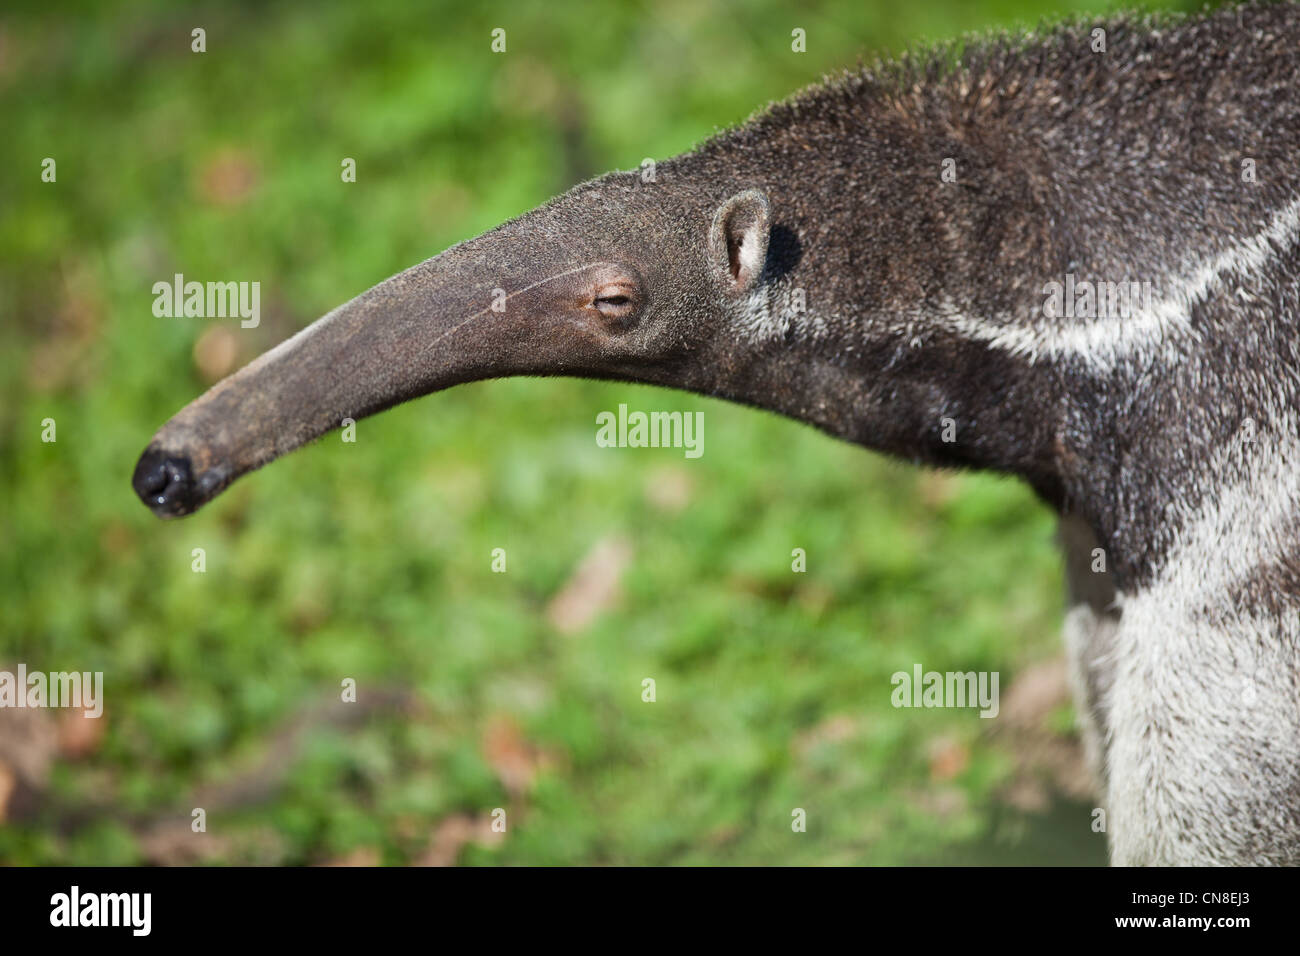 Giant Anteater (Myrmecophaga tridactyla) Stock Photo